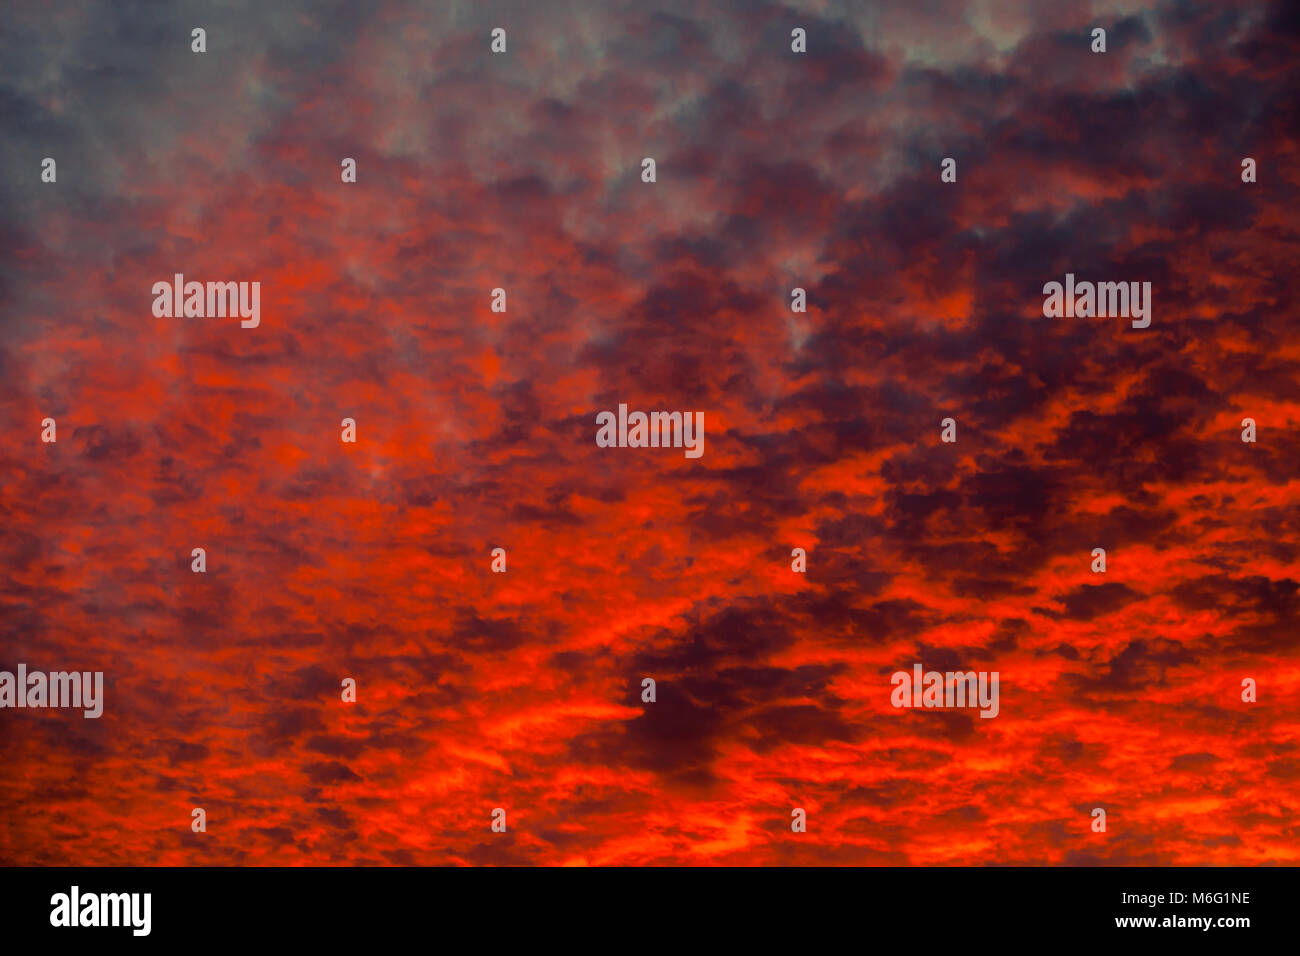 Dramatischer Sonnenuntergang Himmel mit Wolken in kräftigen Rot- und Orangetönen gestrichen Stockfoto